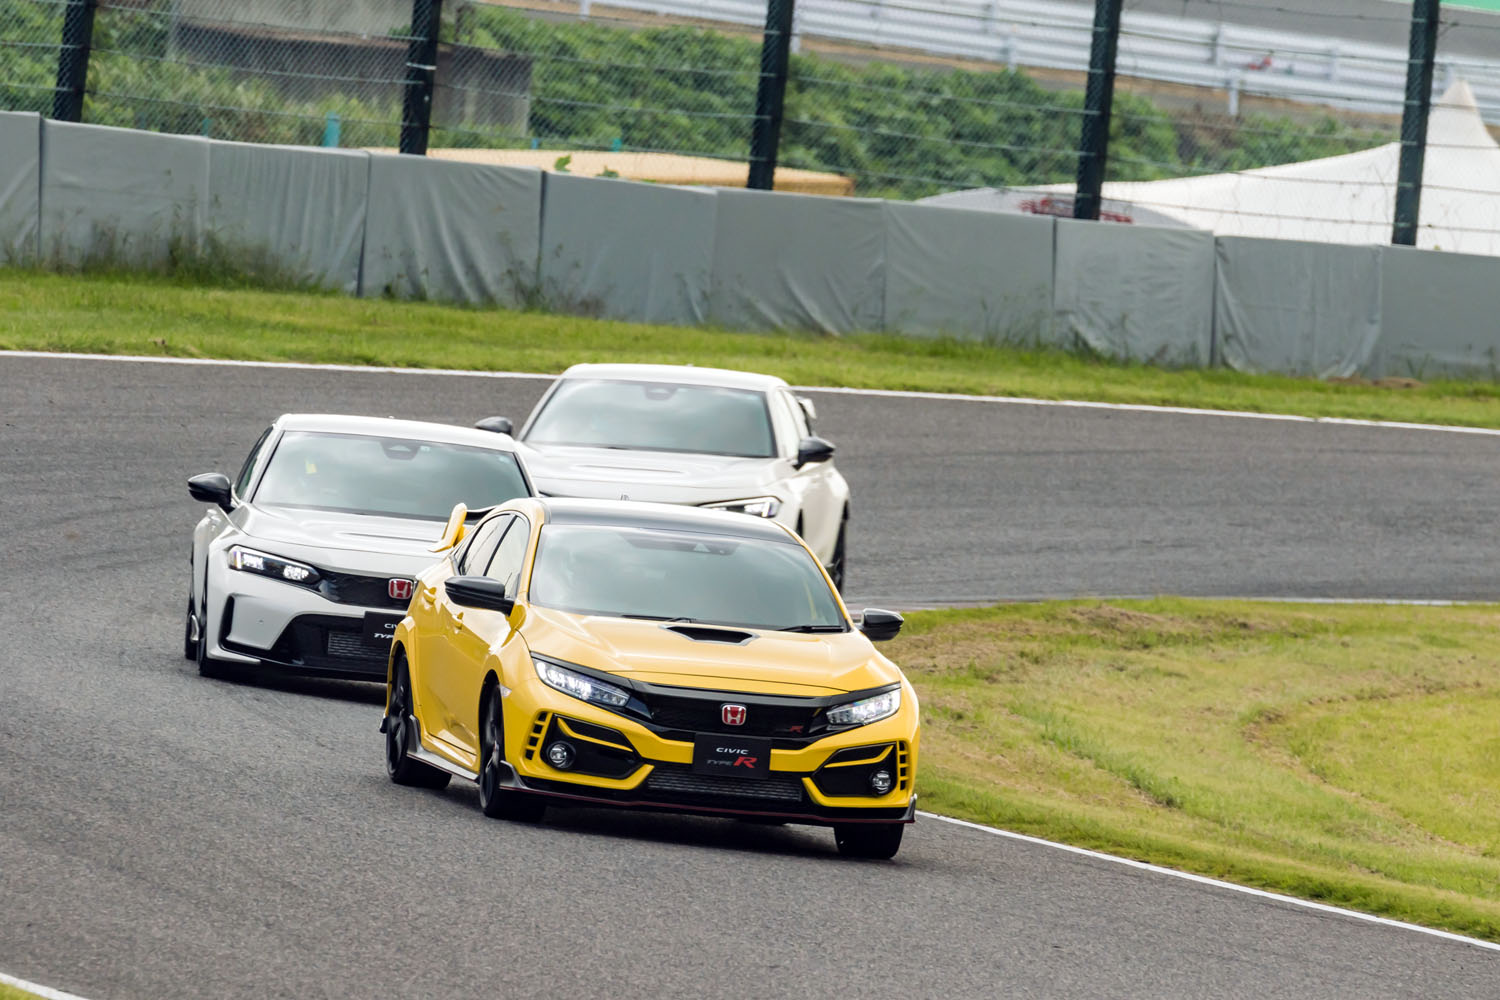 試乗は、レーシングドライバーの武藤英紀選手と伊沢拓也選手の先導のもとに実施。両氏によると、動力性能における先代と新型との違いは、加速とコーナリングで顕著に感じられたという。